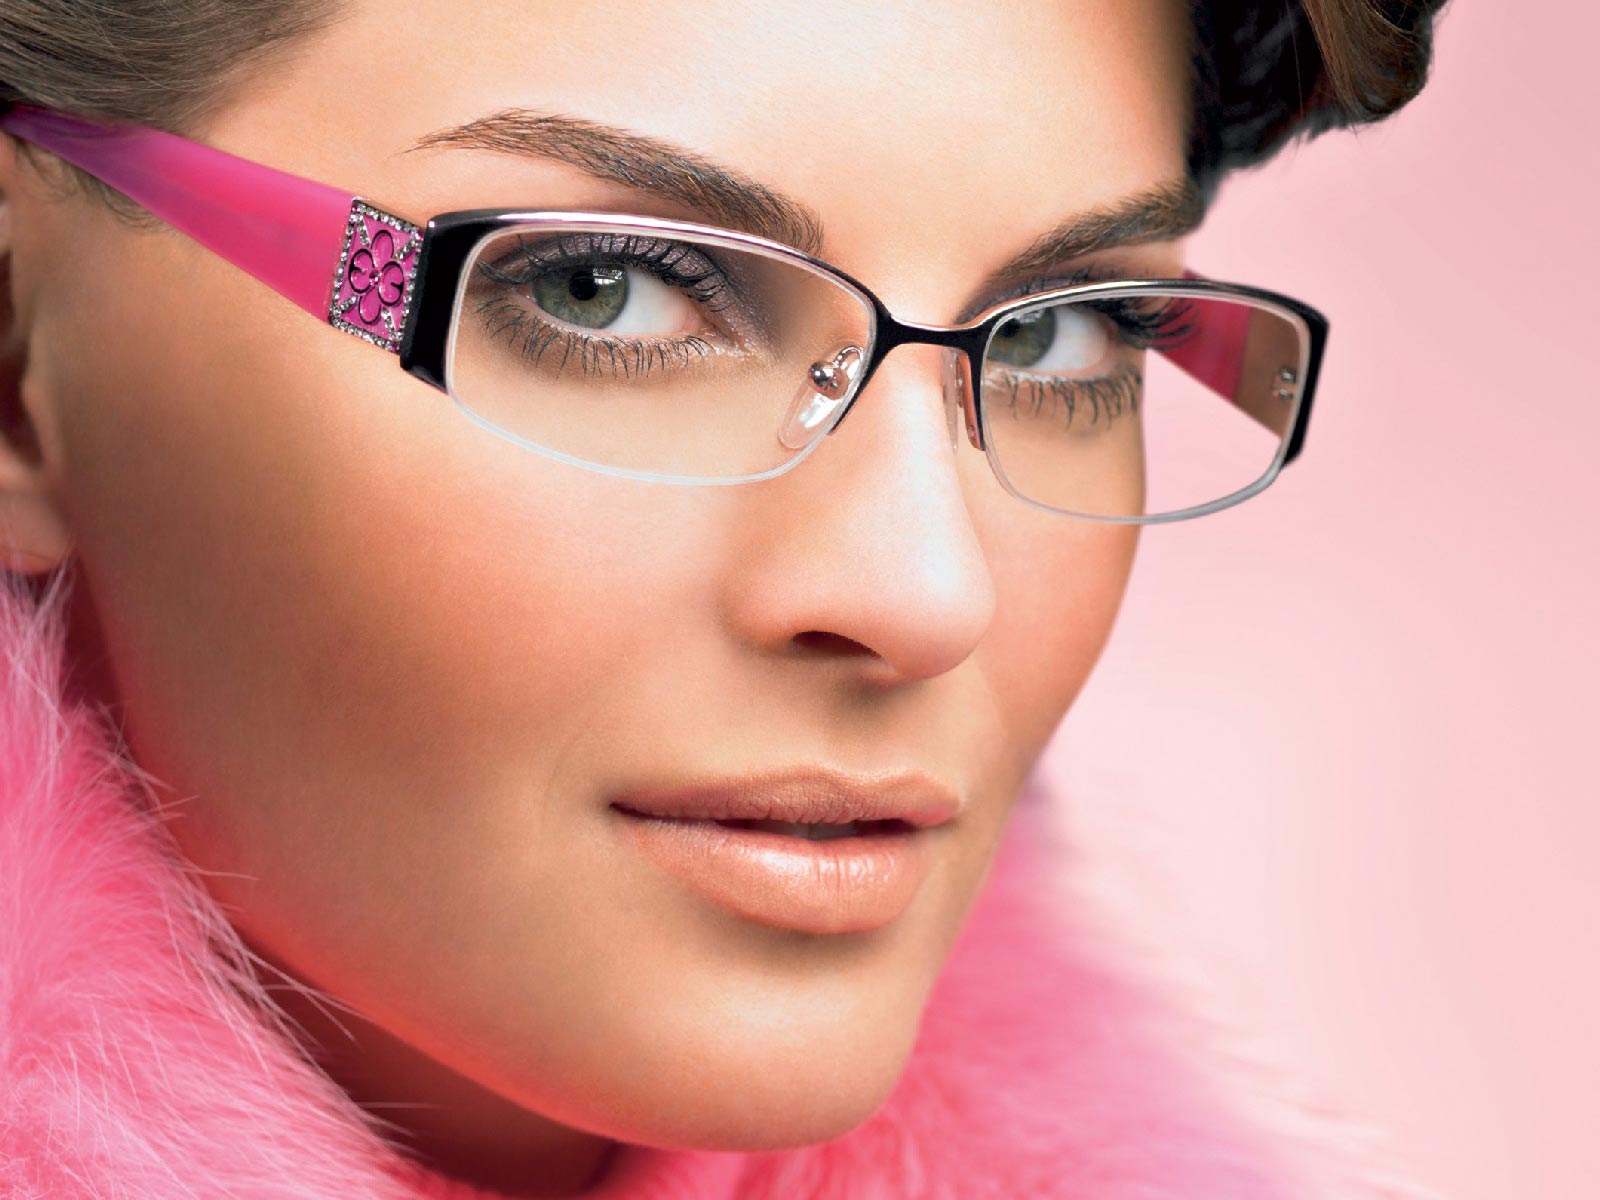 Γιατί οι γυναίκες βάζουν νωρίτερα γυαλιά πρεσβυωπίας